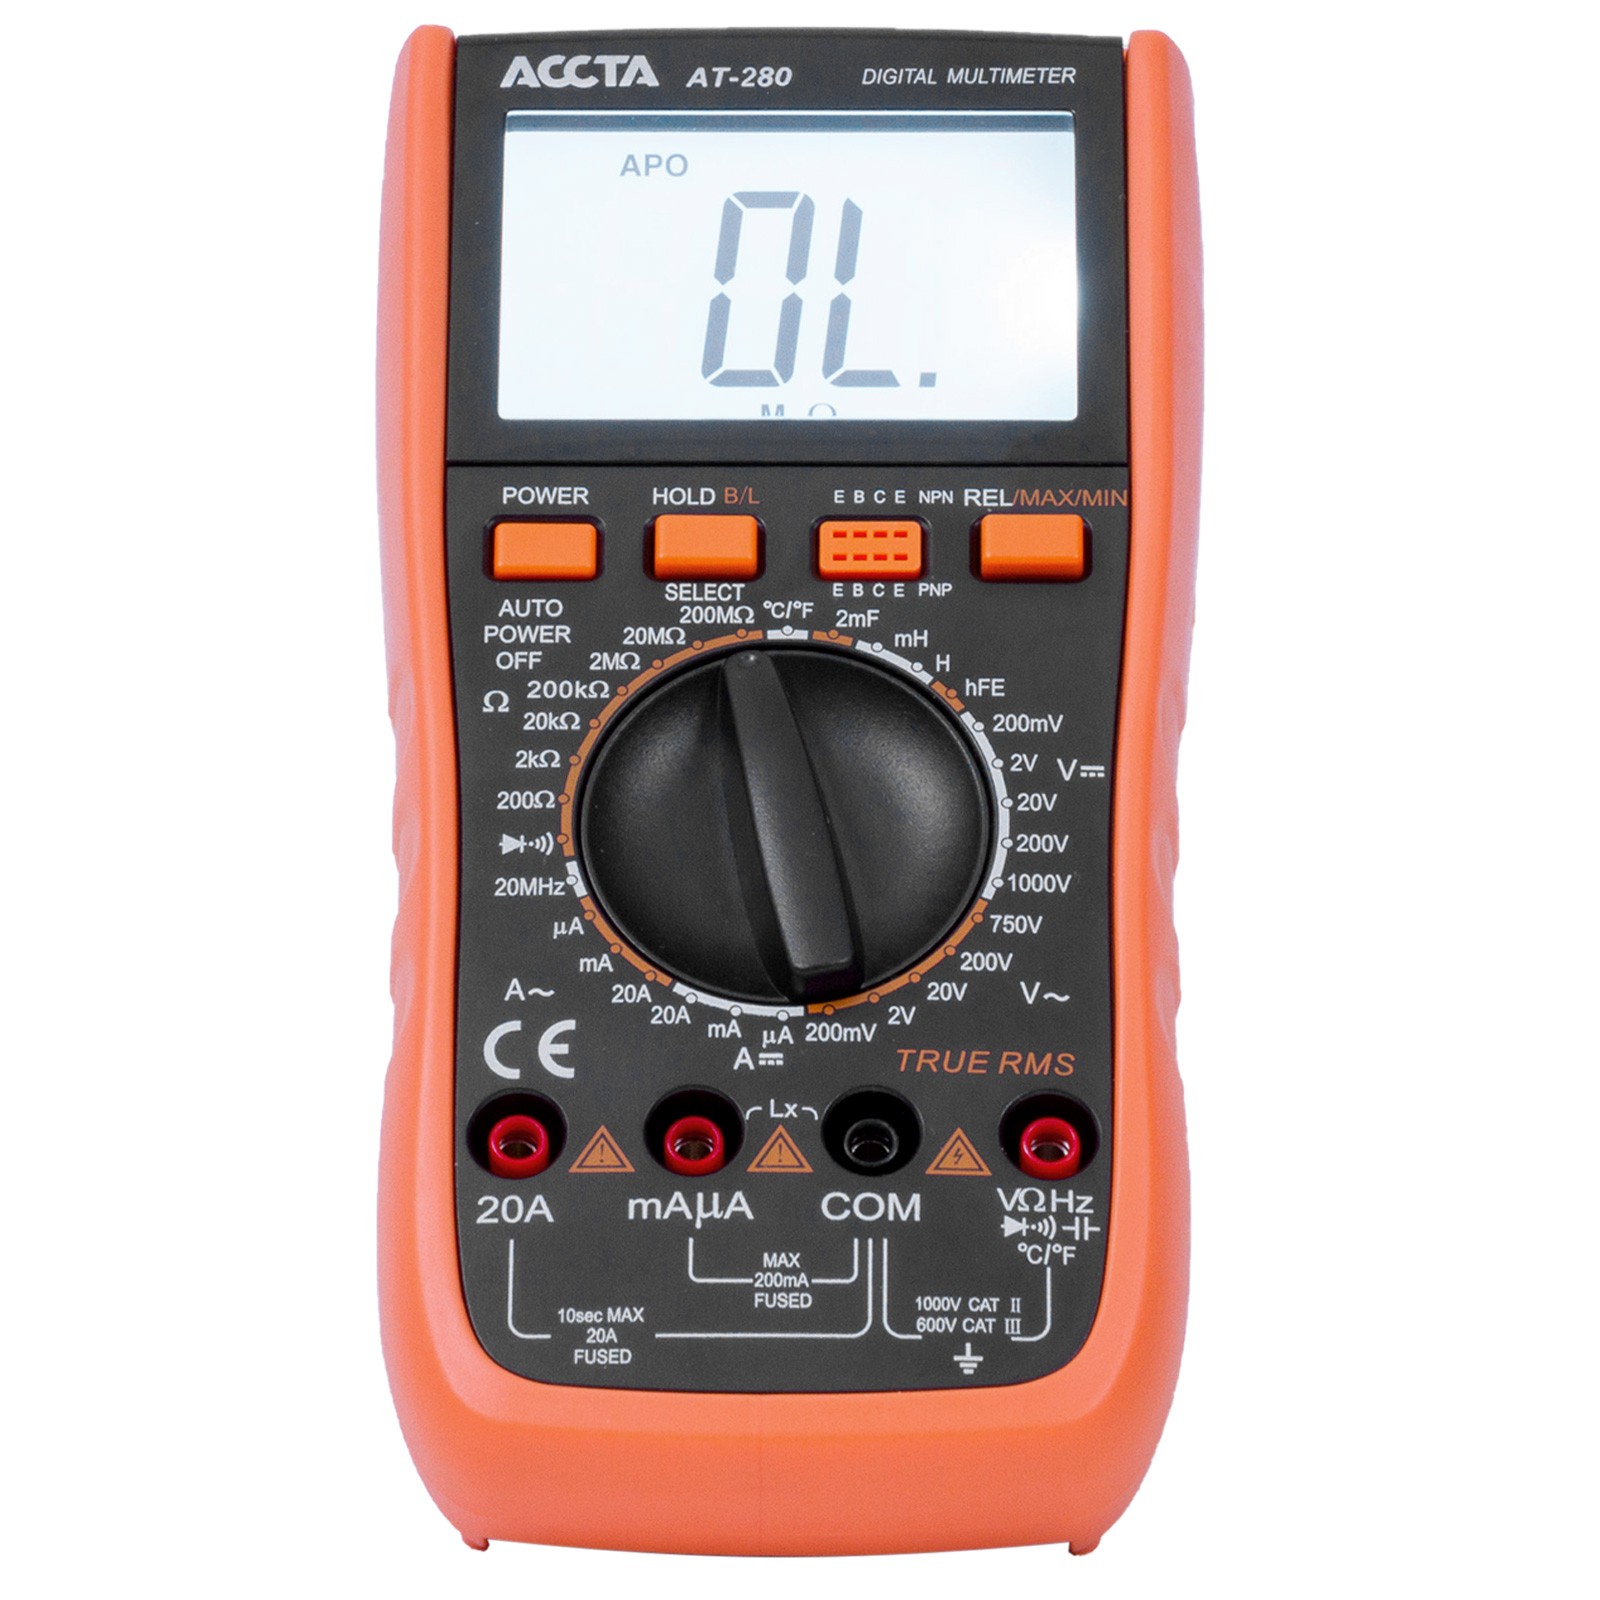 Digital Multimeter Accta AT-280